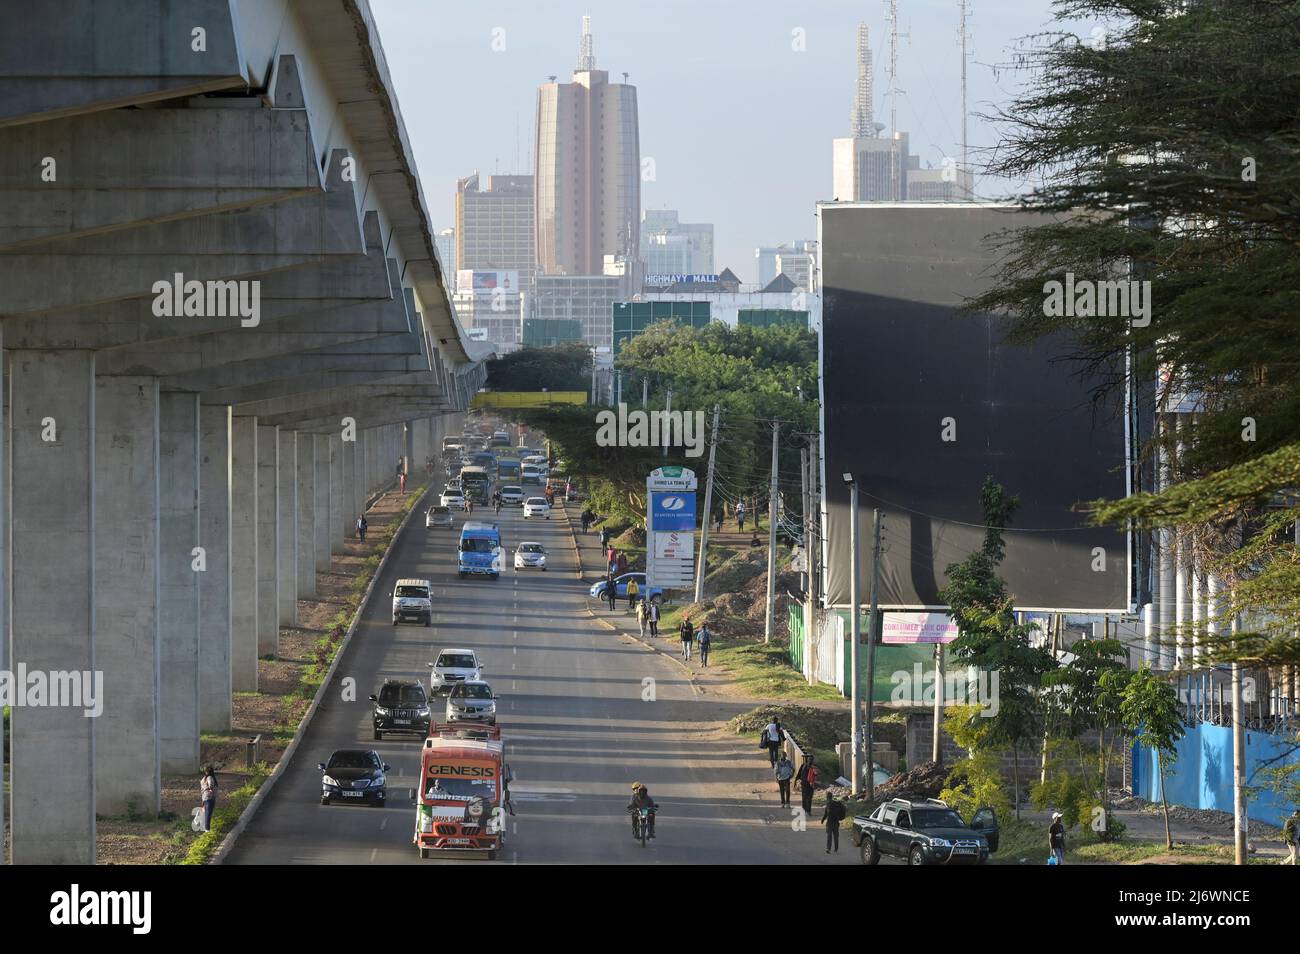 KENYA, Nairobi Expressway, toll highway constuction by chinese company China Road and Bridge Corporation CRBC / KENIA, Nairobi, Maut Autobahn Finanzierung und Bau durch chinesische Firma CRBC Stock Photo